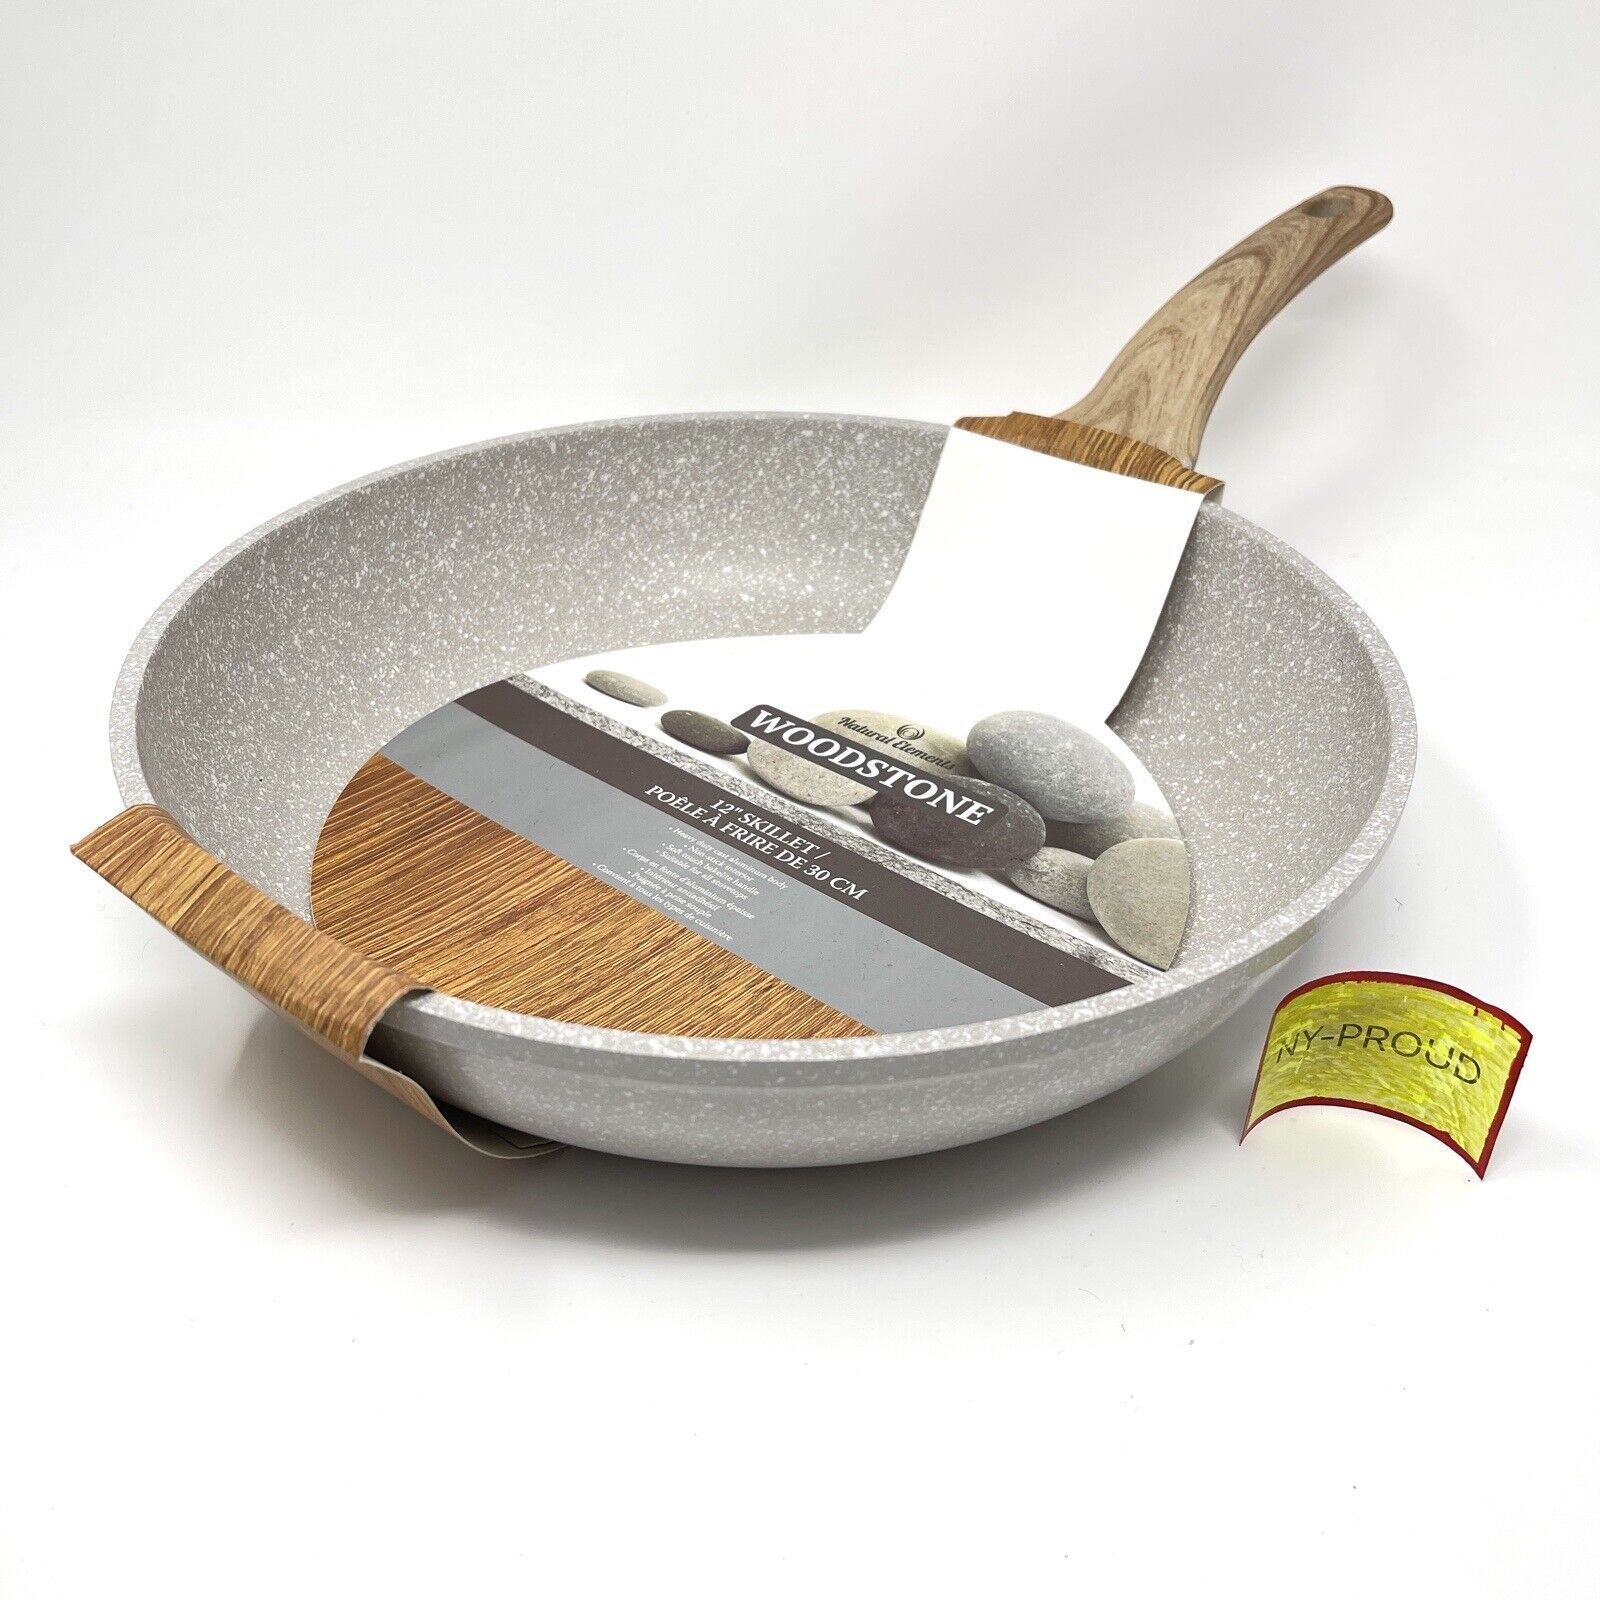 Natural Elements Woodstone Big Skillet/Frying Pan Nonstick Heavy Duty 12”  Inch сковороды и сотейники V92042353 купить по выгодной цене в  интернет-магазине  с доставкой